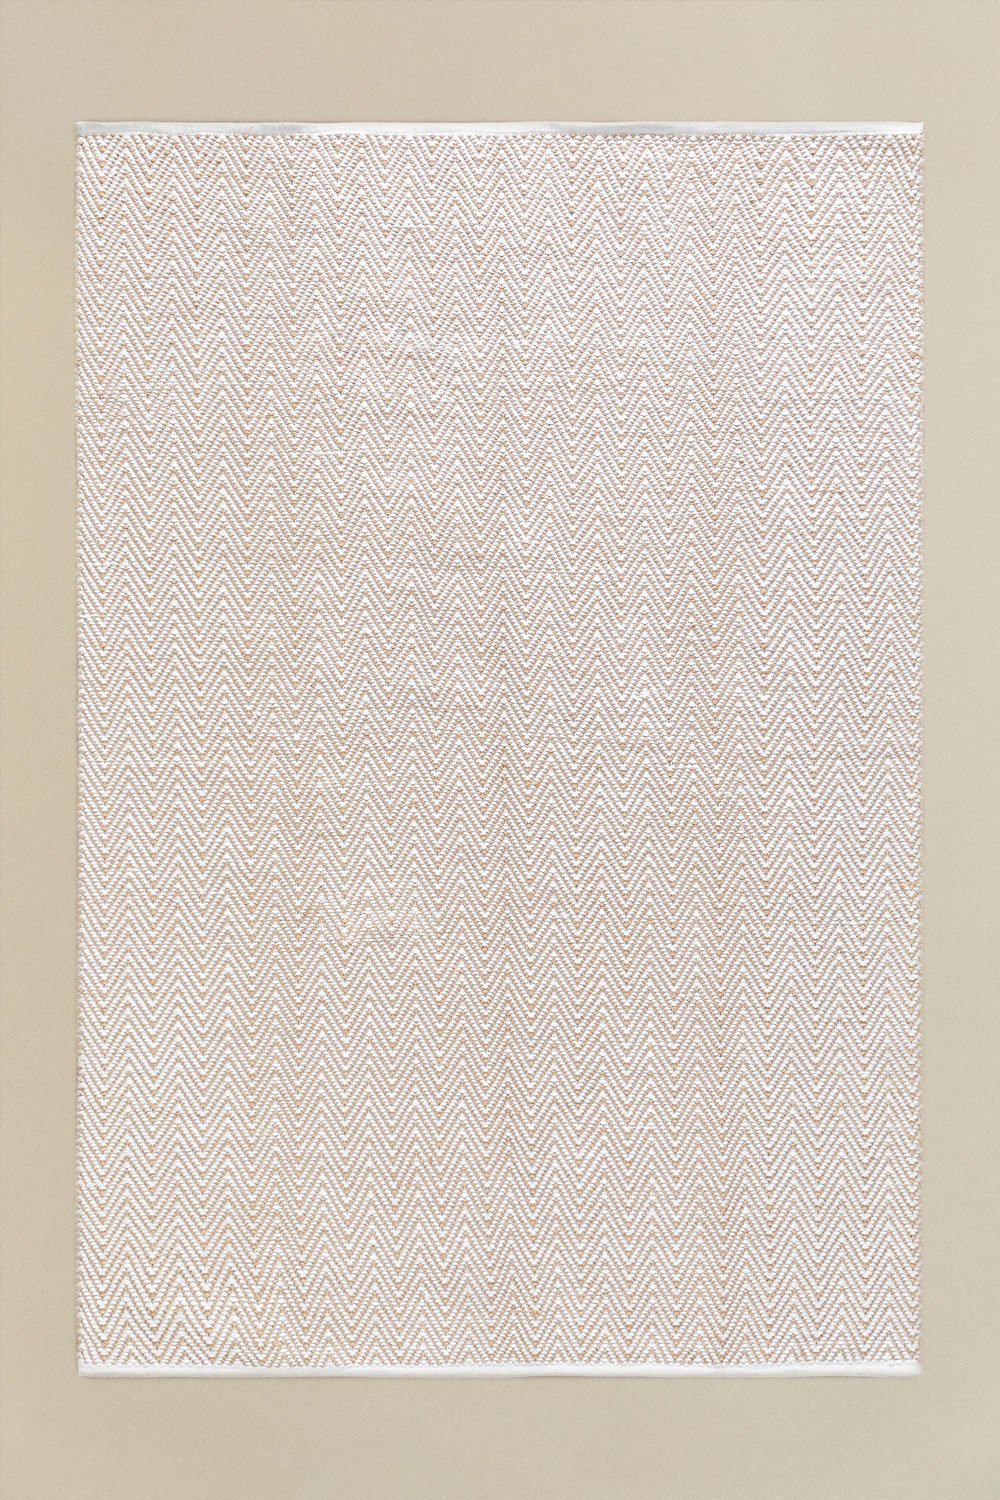 Tapis d'extérieur en jute (240x160 cm) Romain, image de la galerie 1